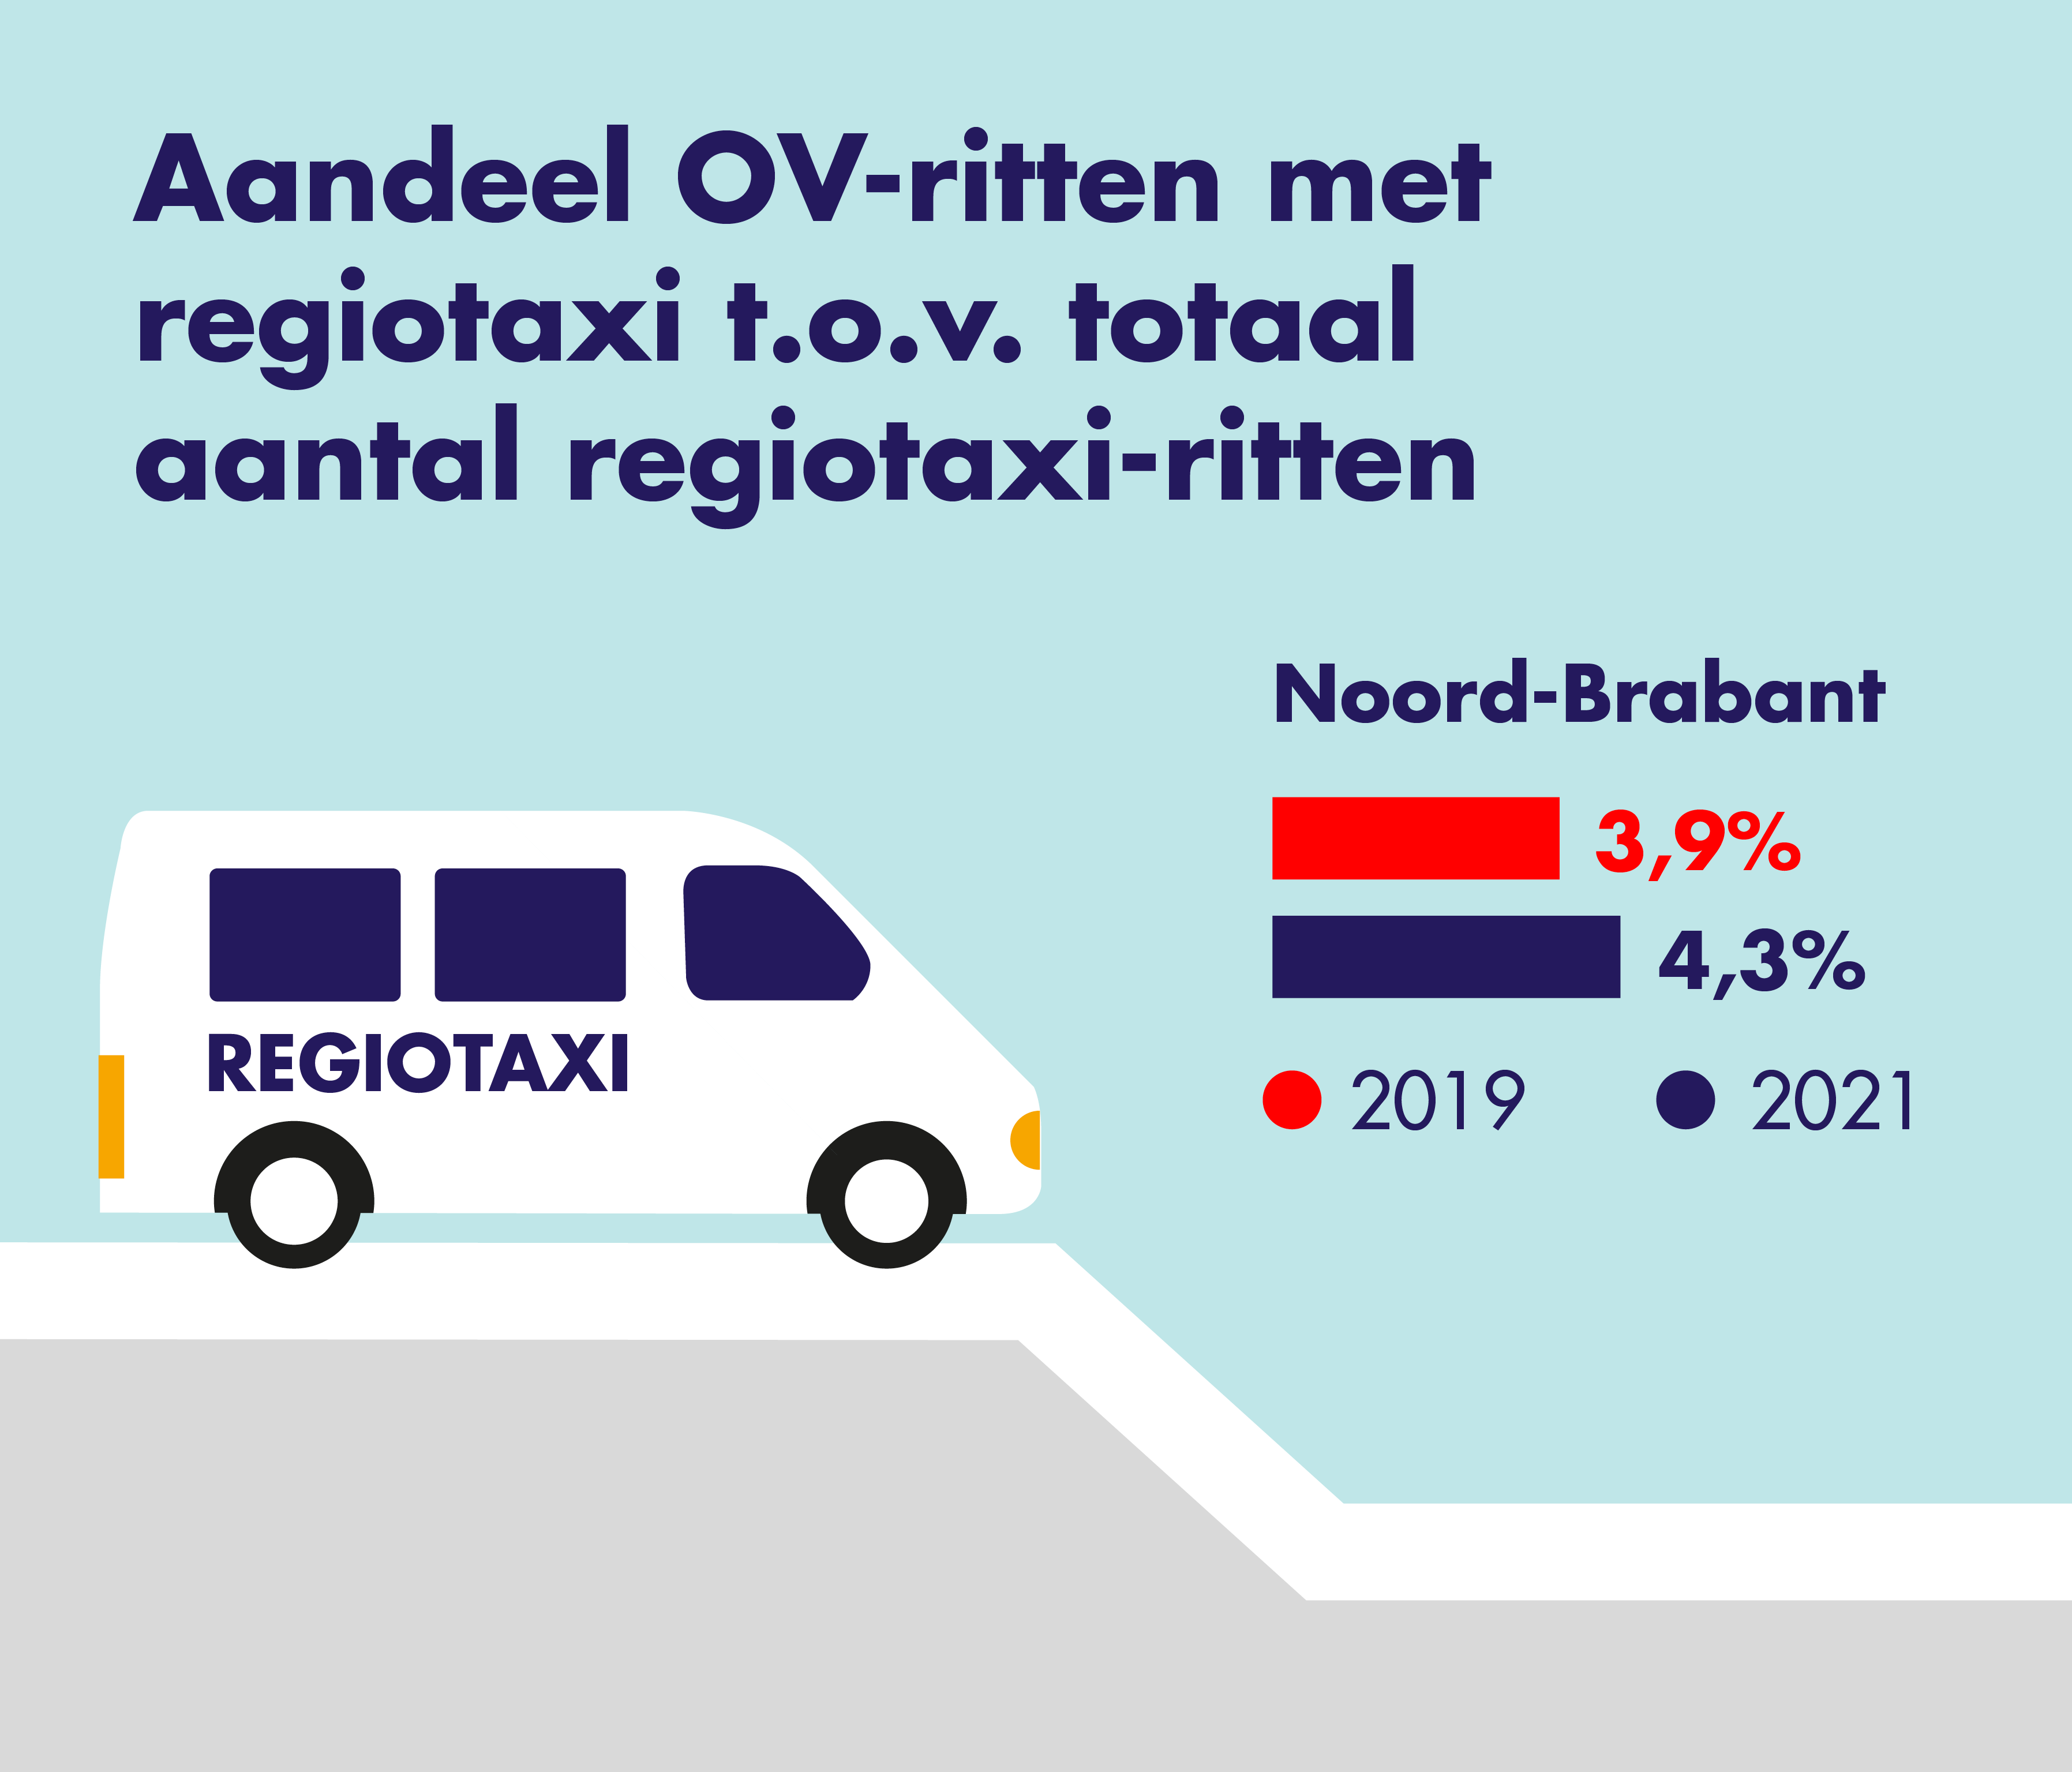 Op deze afbeelding is het aandeel van de OV-ritten met de regiotaxi ten opzichte van 
                    het totaal aantal regiotaxi-ritten weergegeven. Er wordt een vergelijking gemaakt tussen 2019 en 2021.